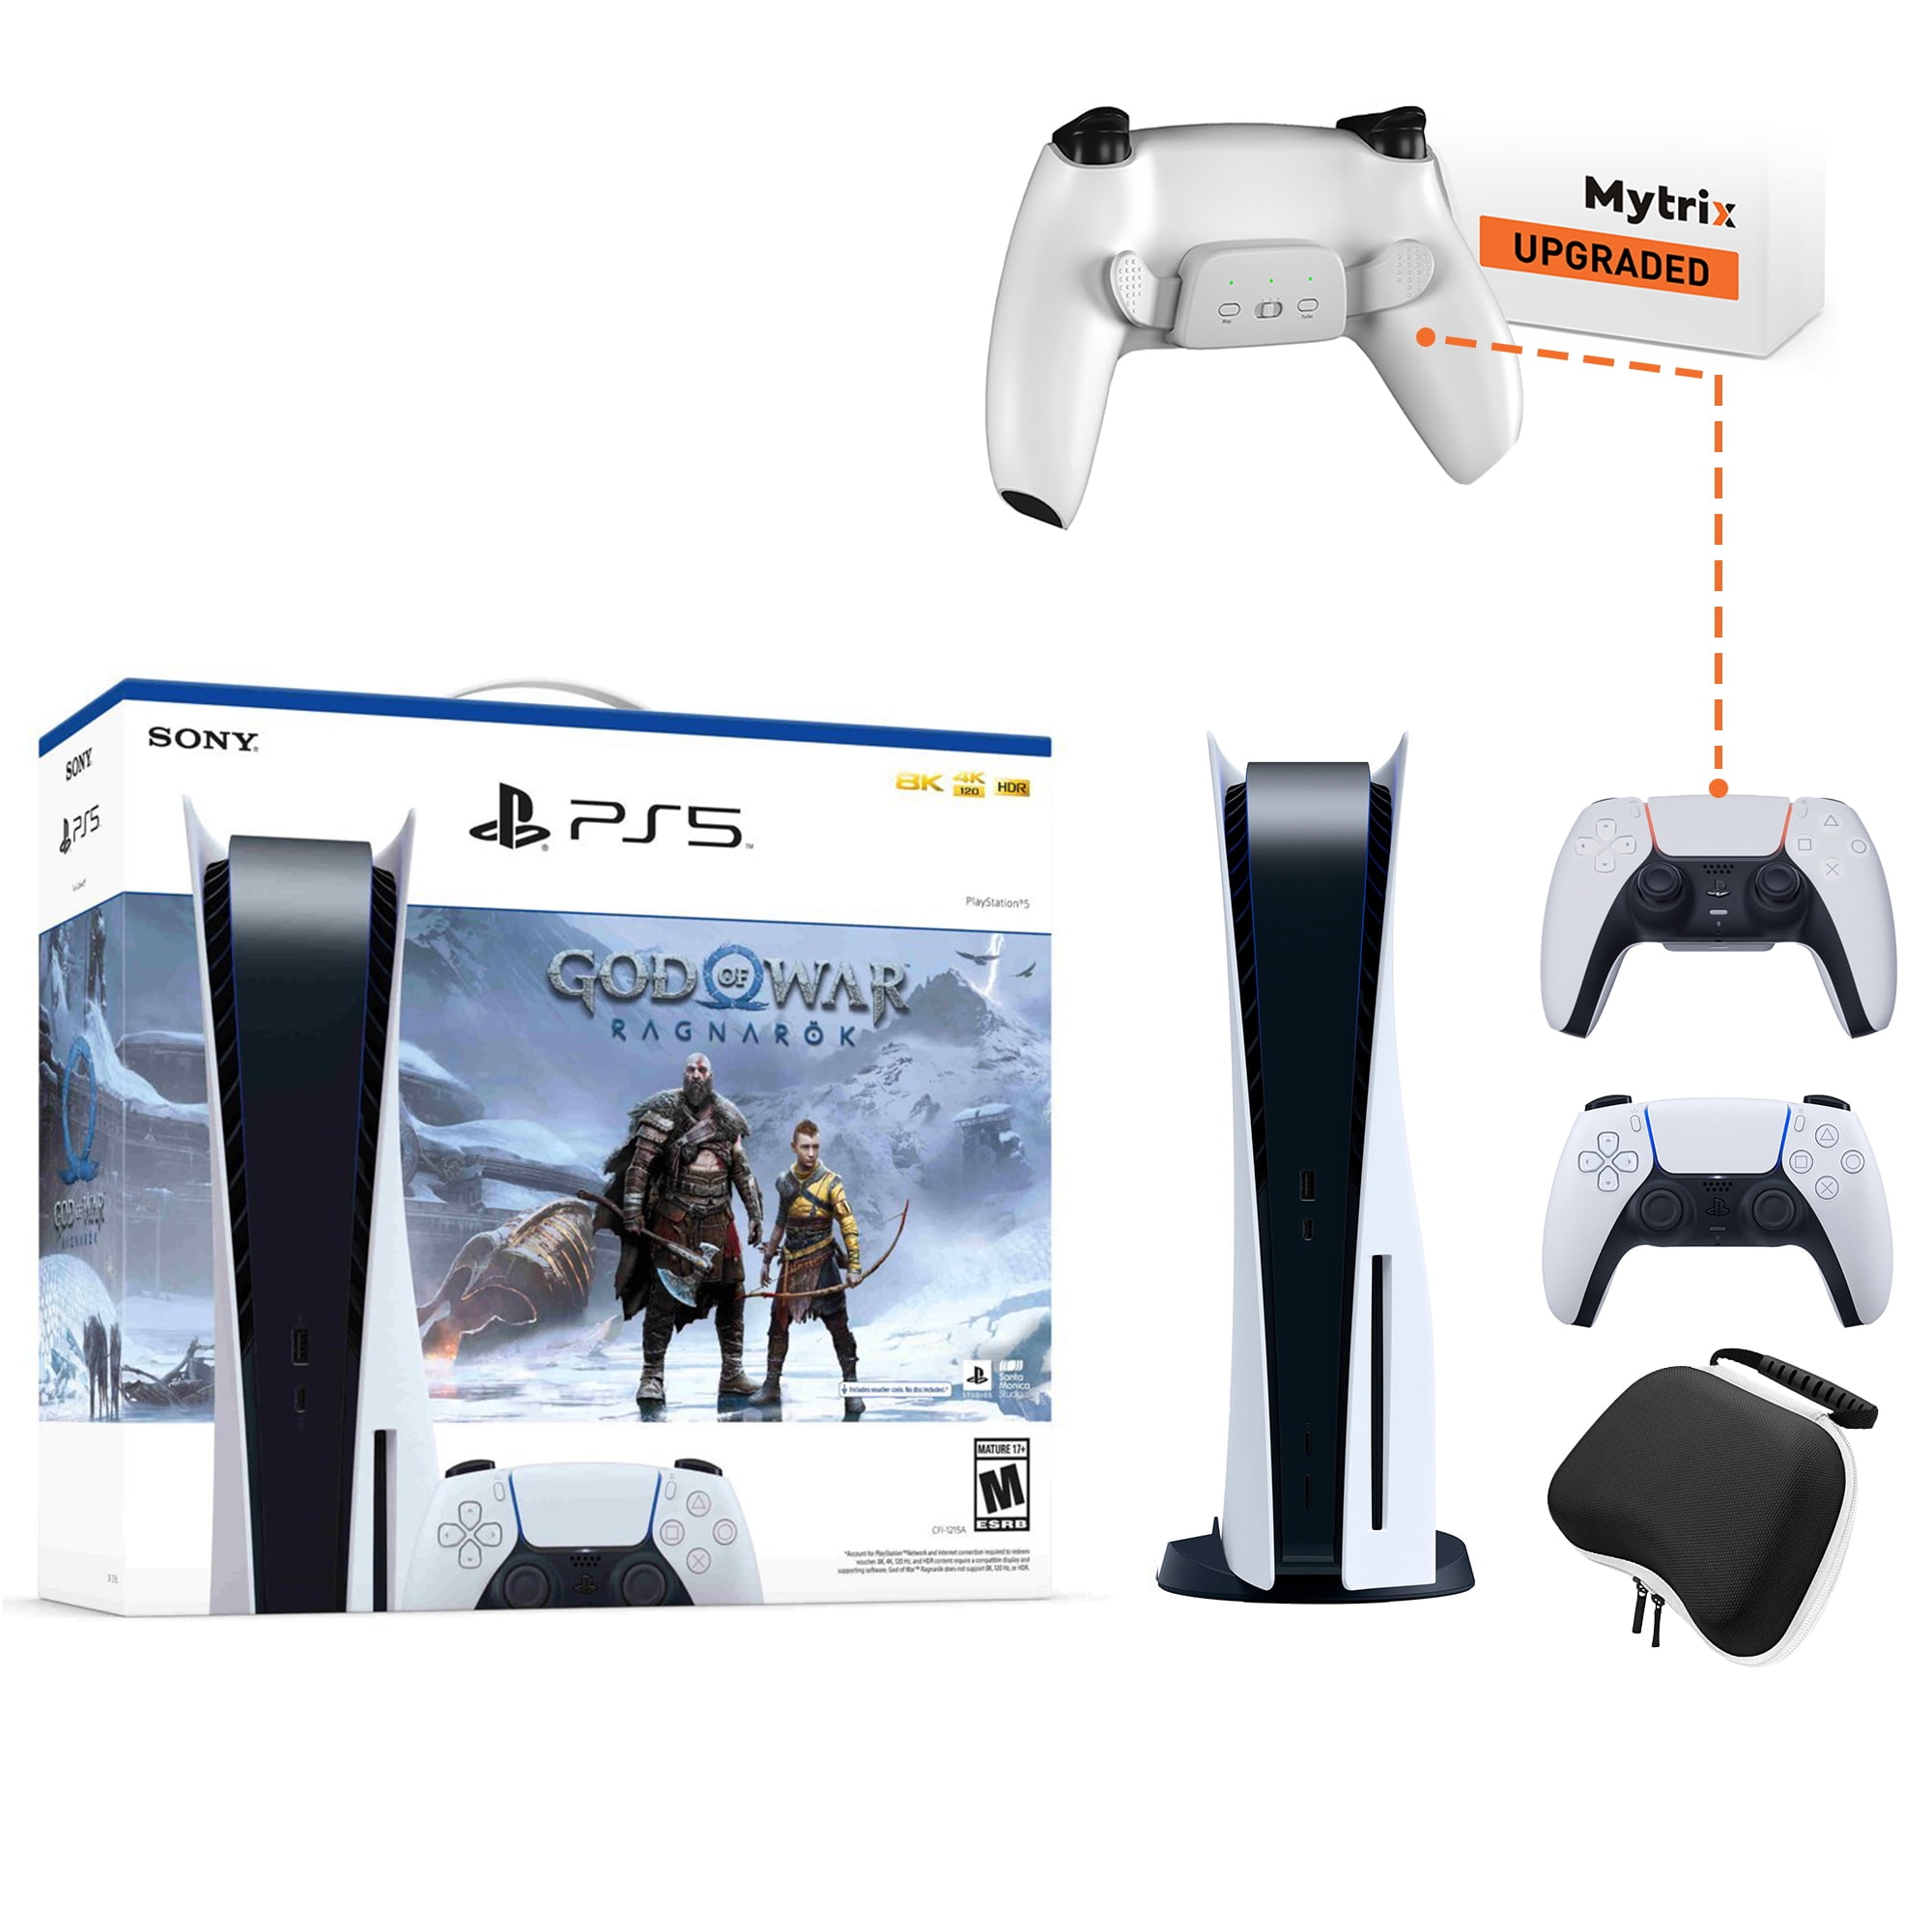 Sony Playstation 5 Digital Edition God of War Ragnarök Bundle with